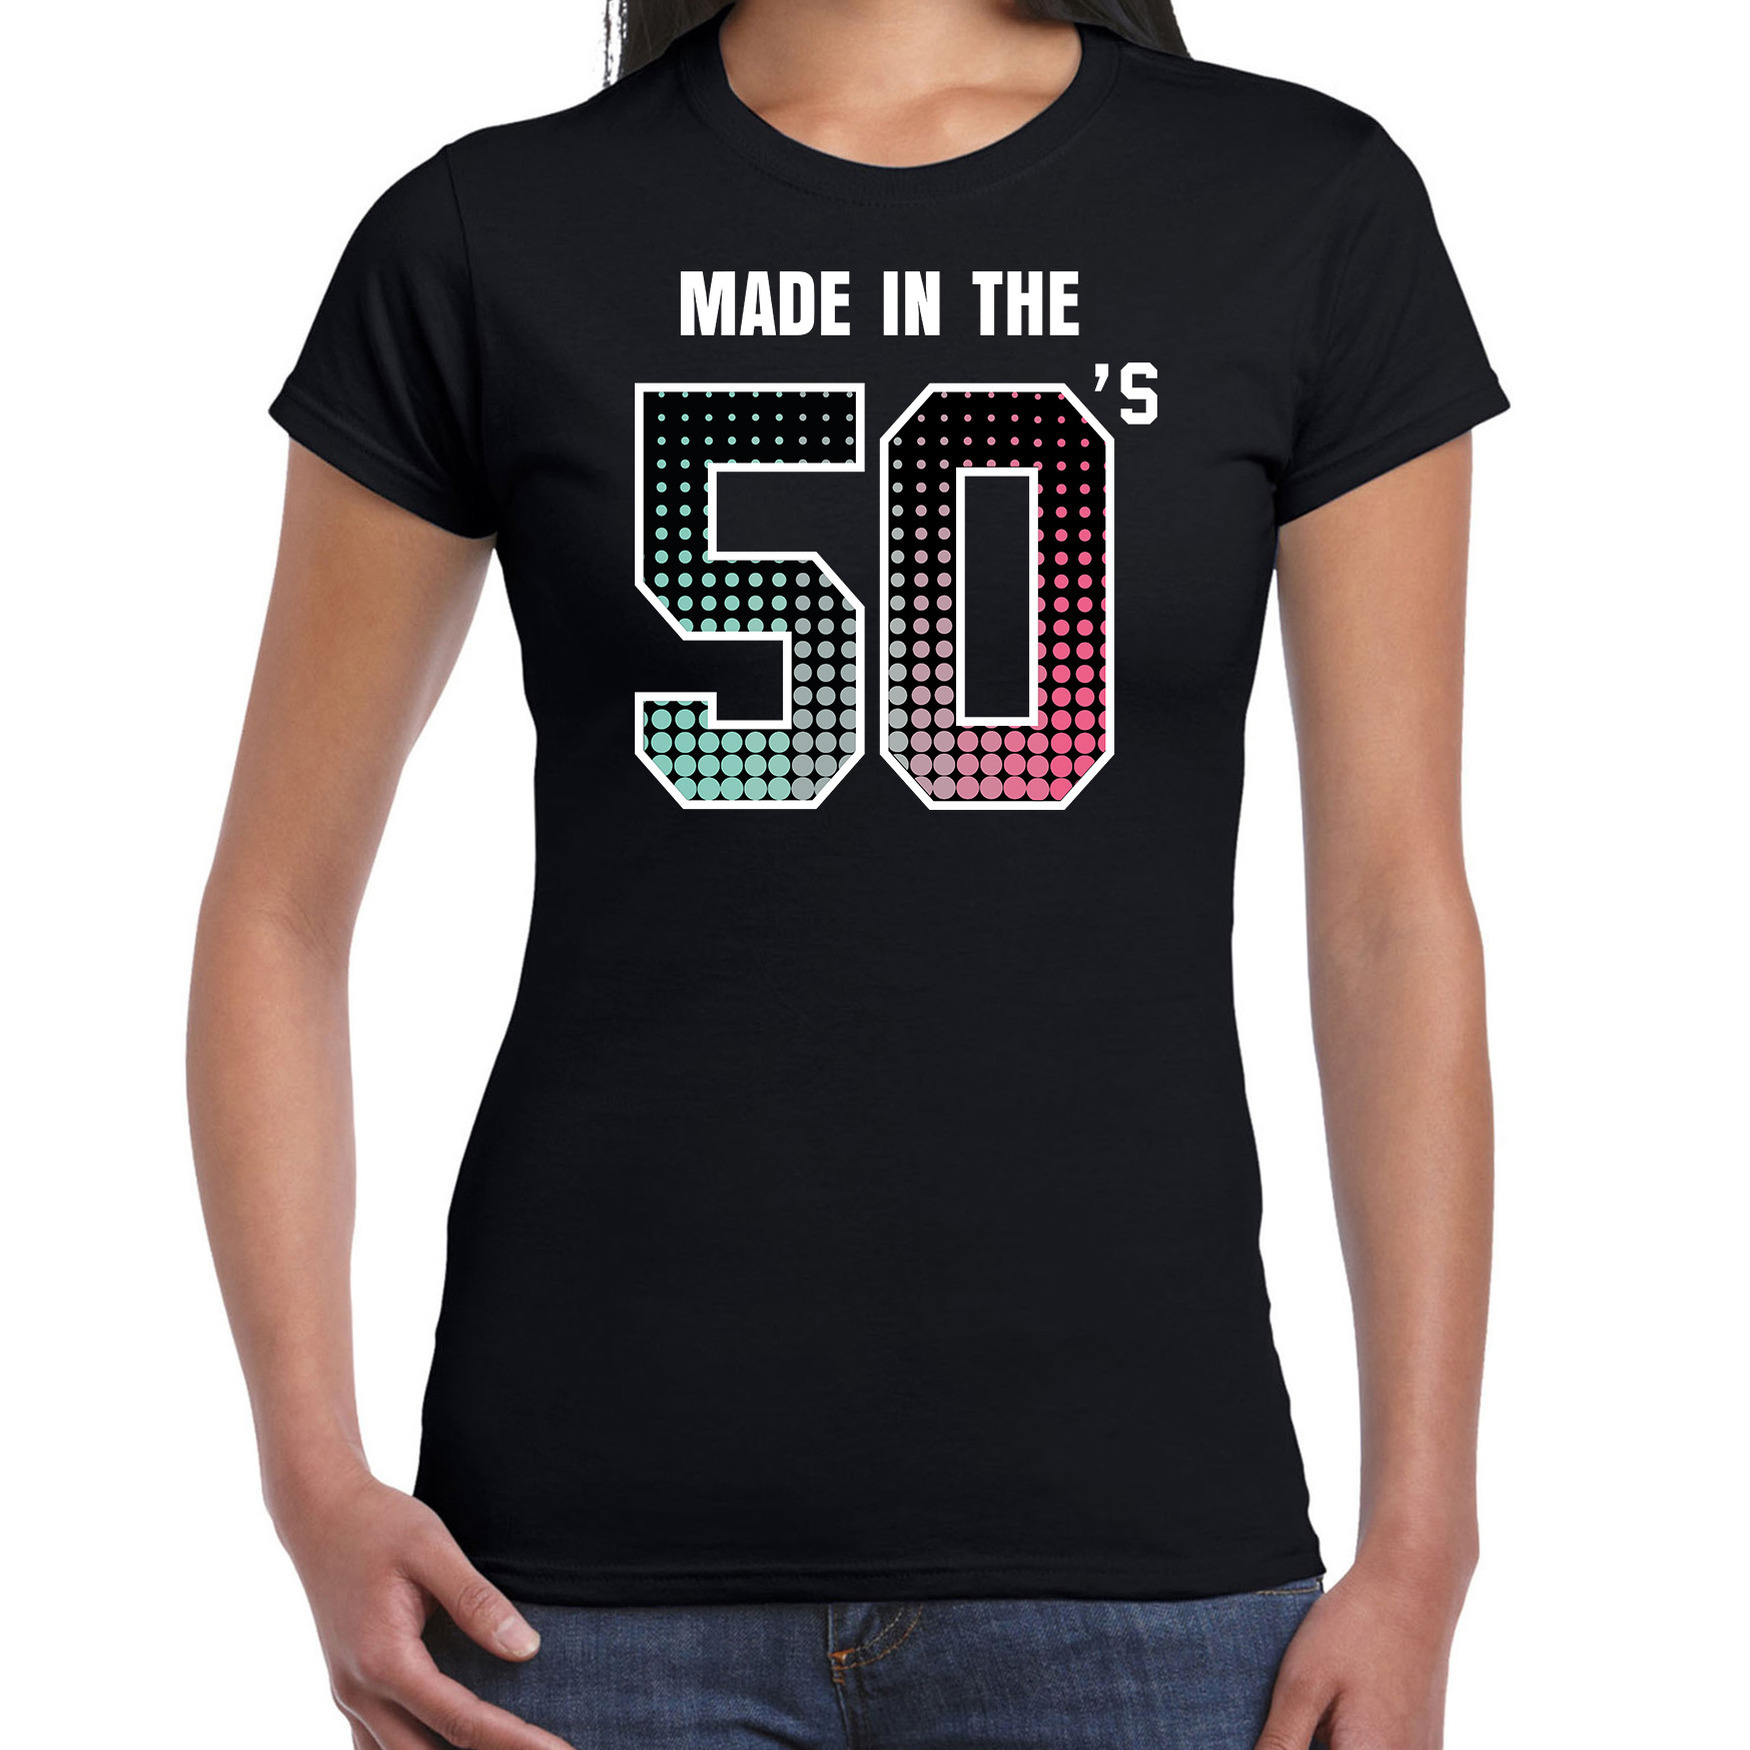 Fiftys t-shirt - shirt made in the 50s - geboren in de jaren 50 zwart voor dames